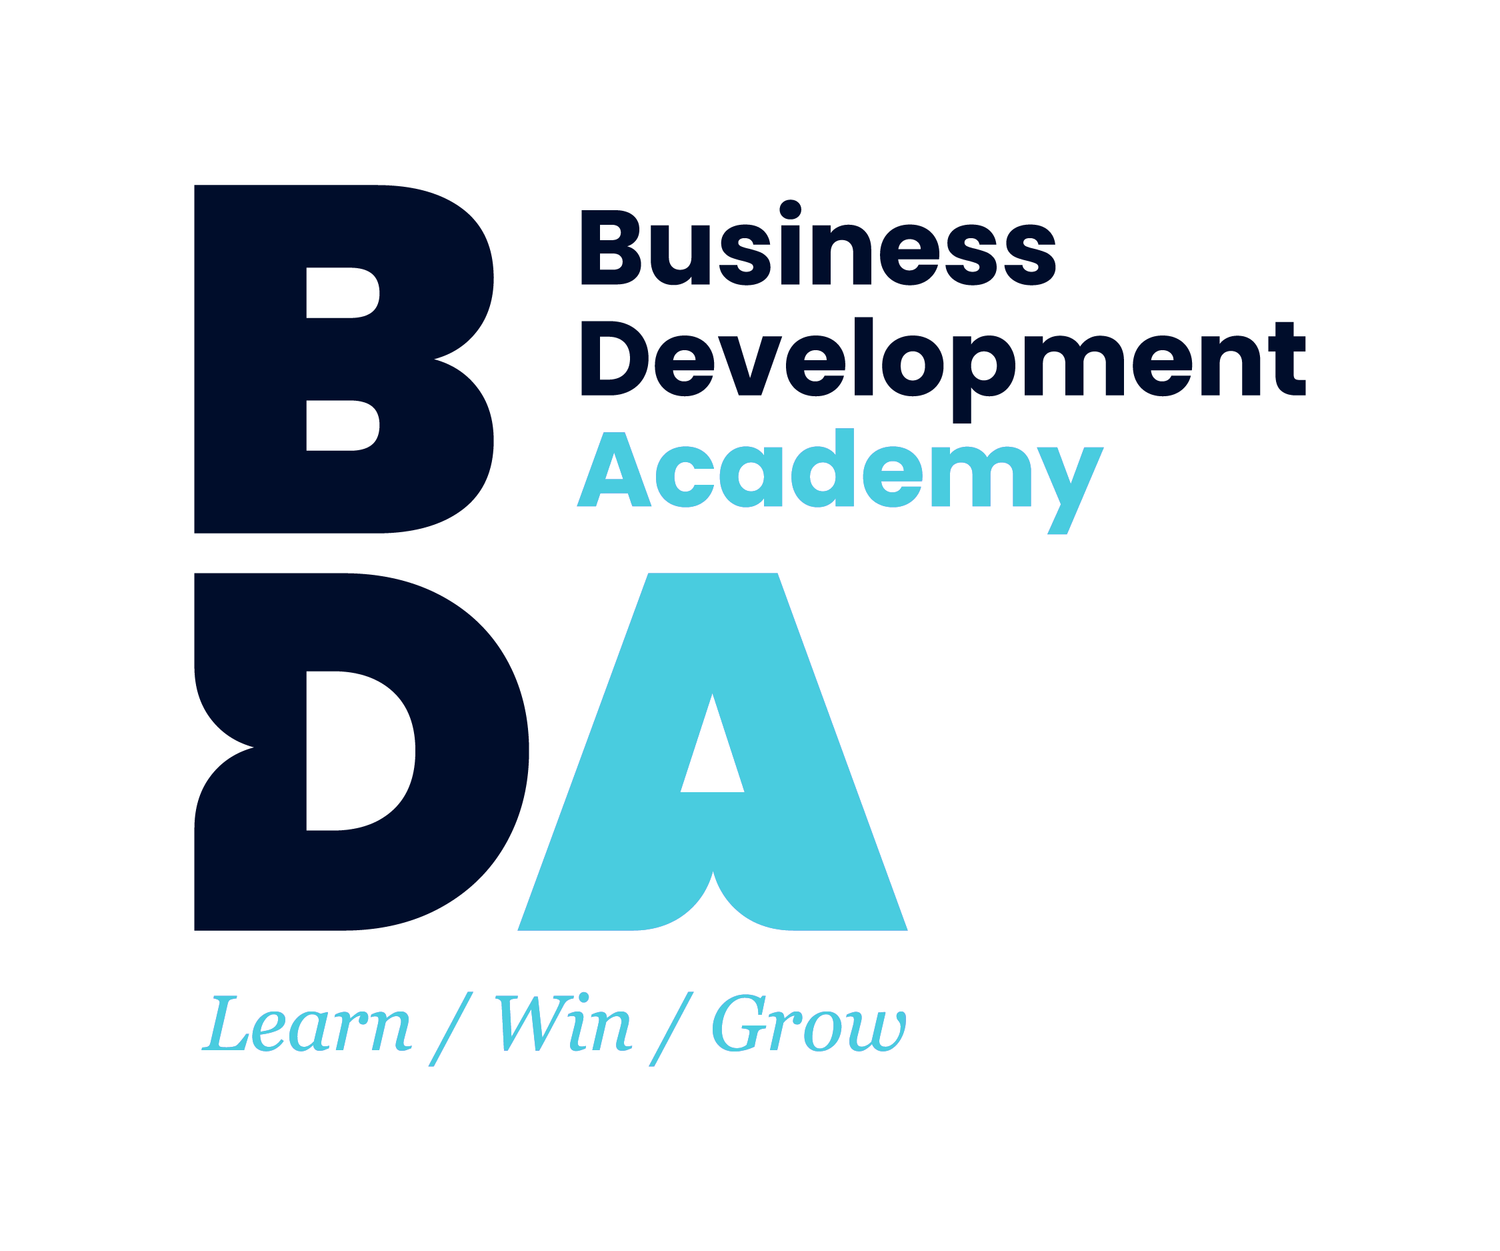 Business Development Academy